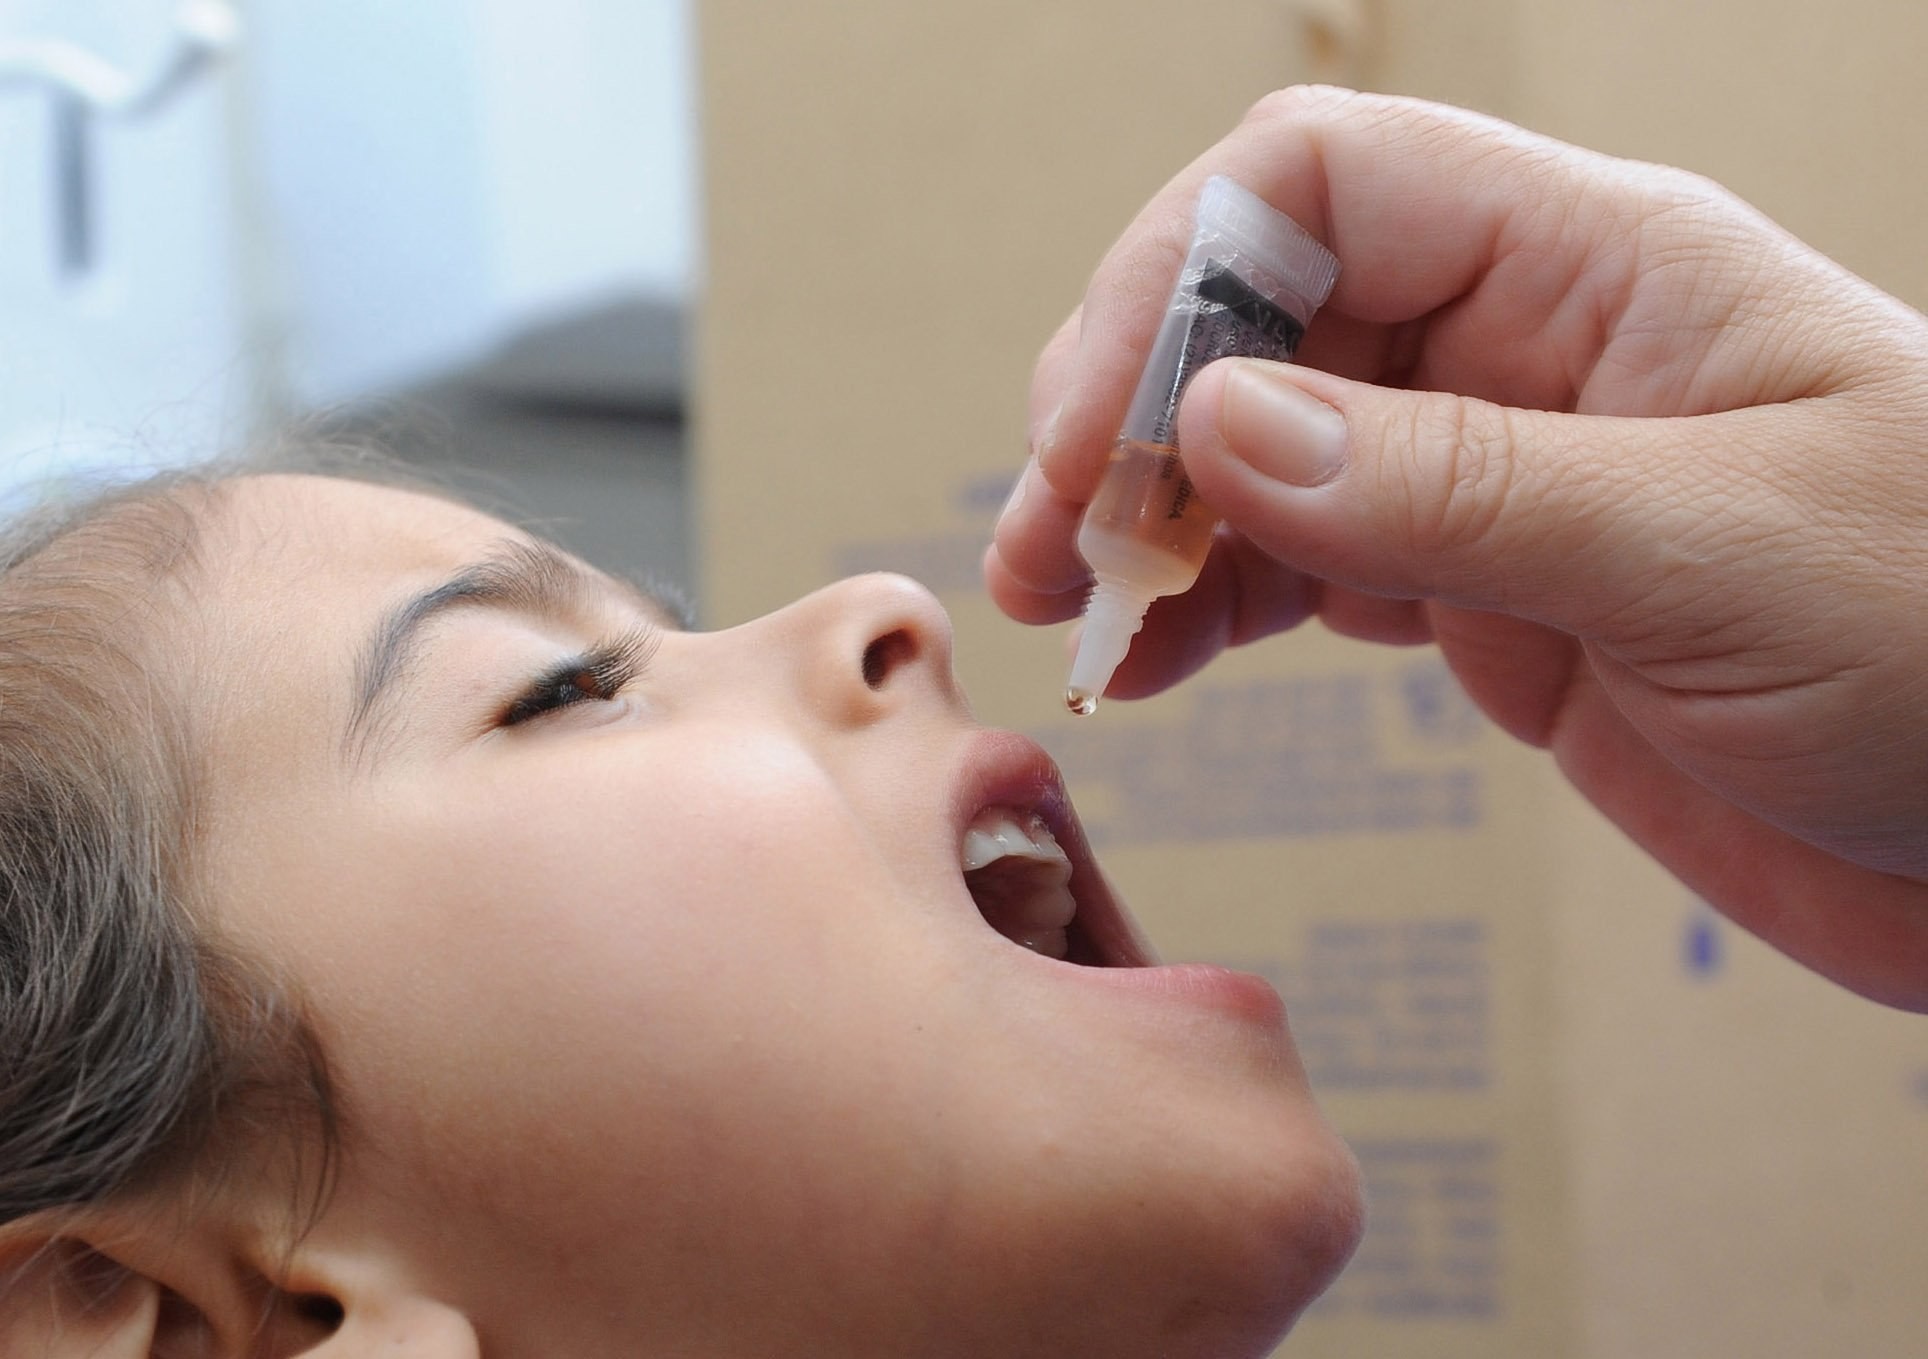 Poliomielite corre grande risco de ser reintroduzida no Brasil  (Foto: Prefeitura de Galvão )